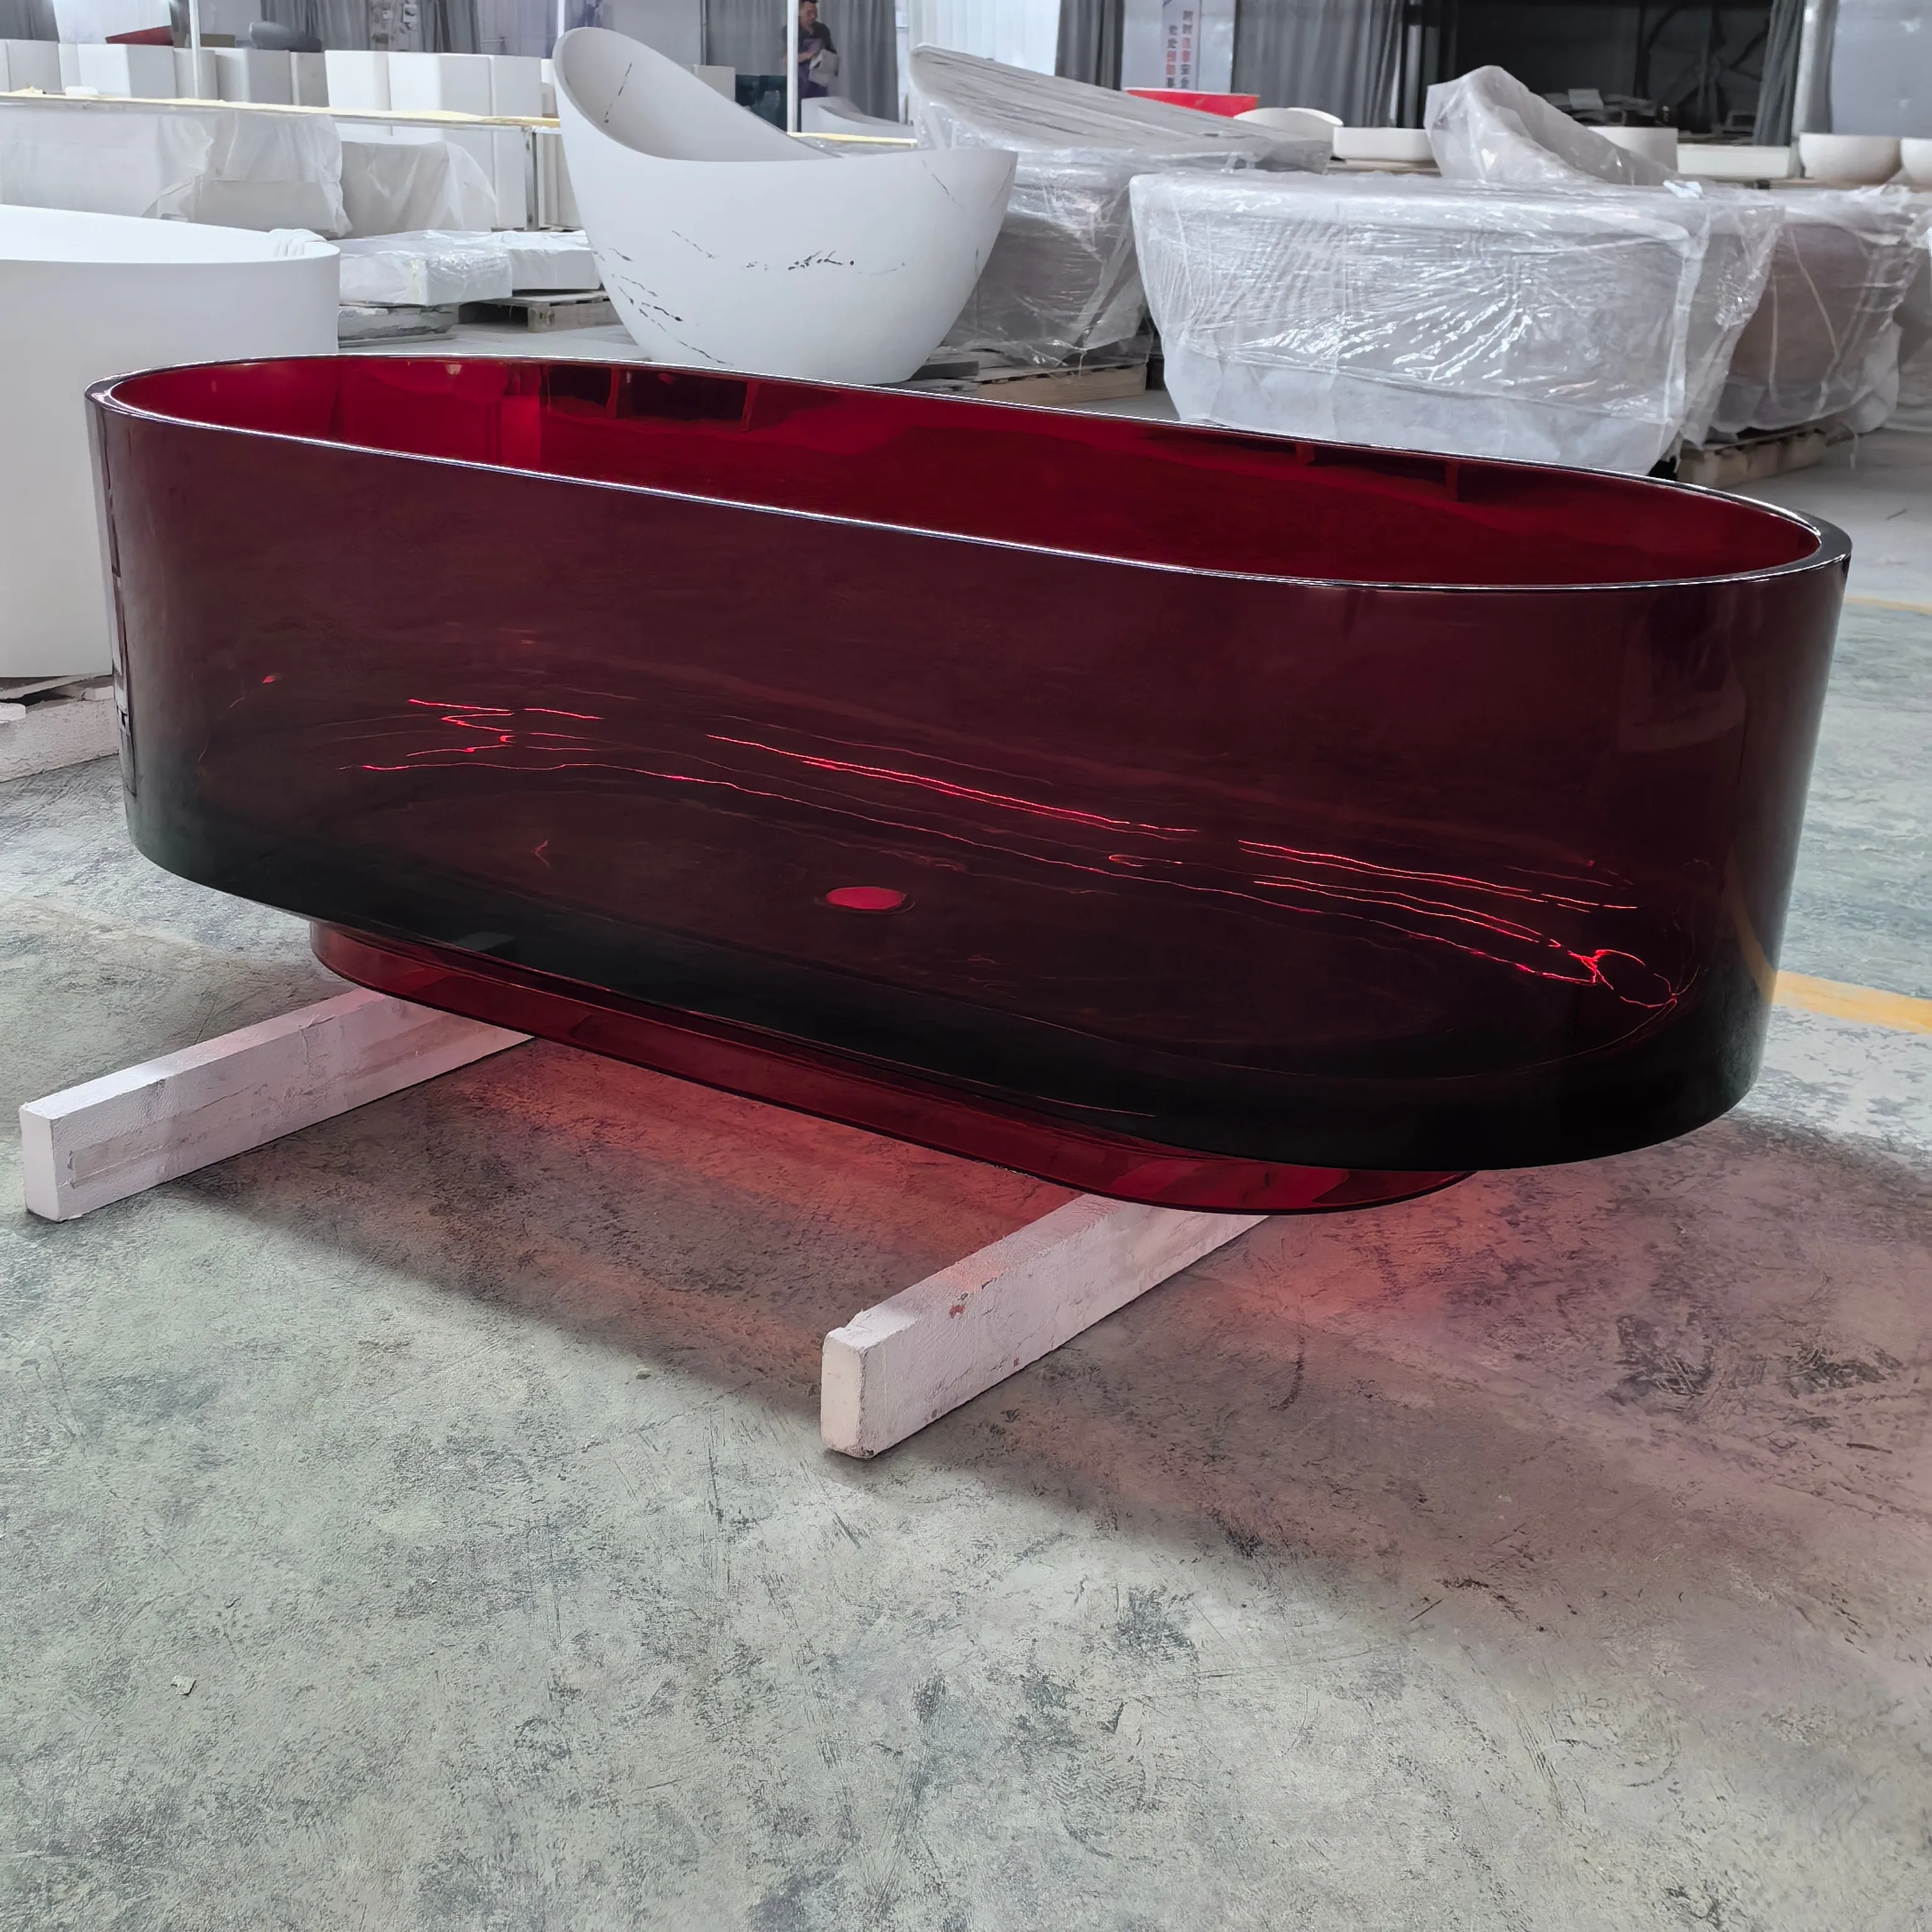 Banheira de resina transparente vermelha para hotel, banheira de pedra artificial, banheira translúcida de poliéster transparente, design moderno